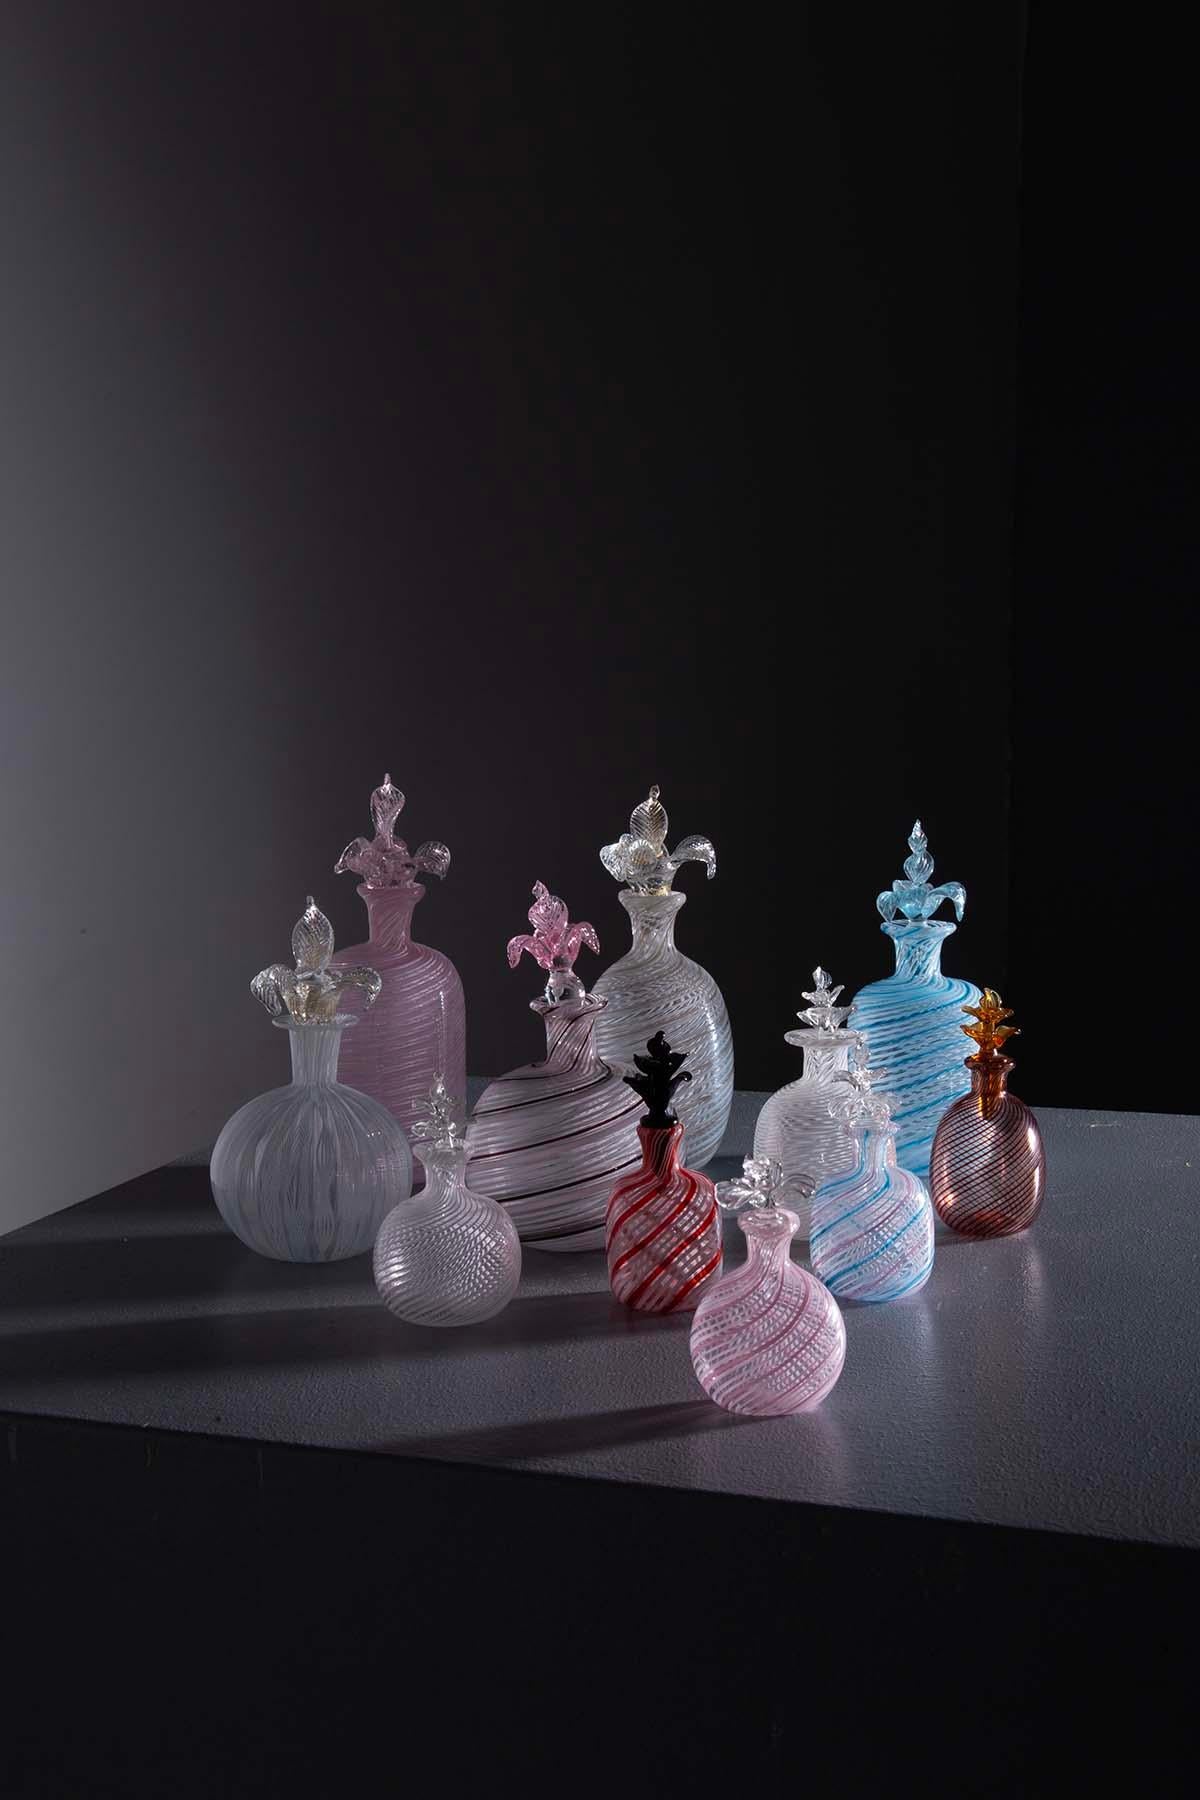 Ein Set von 10 exquisiten Zierampullen aus kostbarem Murano-Glas aus den 1960er Jahren ist ein wahres Kunststück.

Dieses Glas wurde von italienischen Meisterglaskünstlern mit einer speziellen Technik namens 